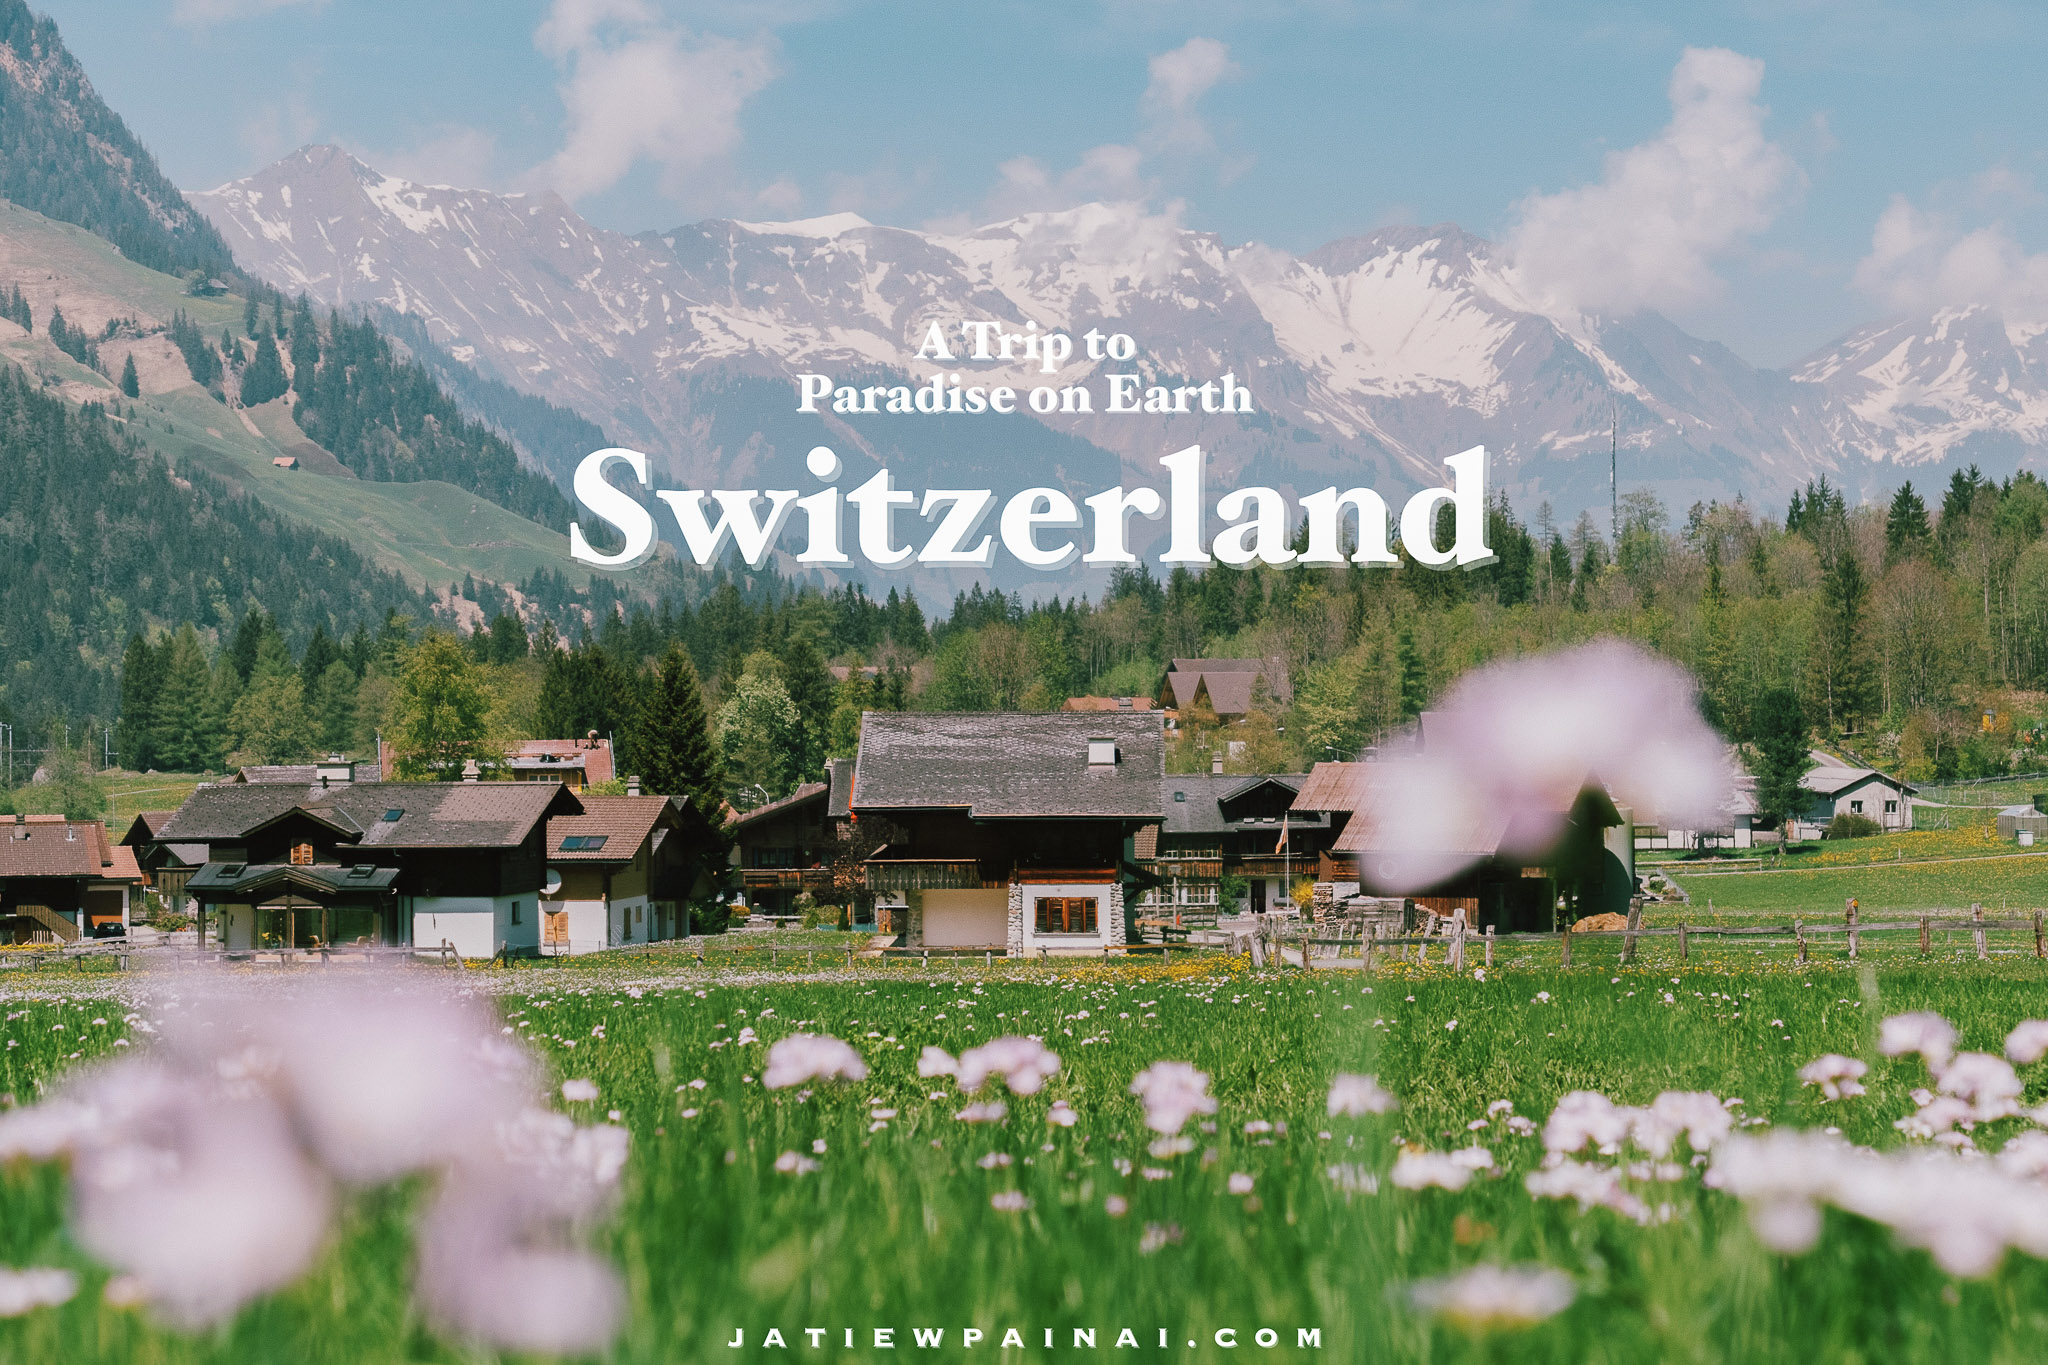 รีวิวสวิตเซอร์แลนด์ : A Trip to Paradise on Earth “Switzerland” – Jatiewpainai.com